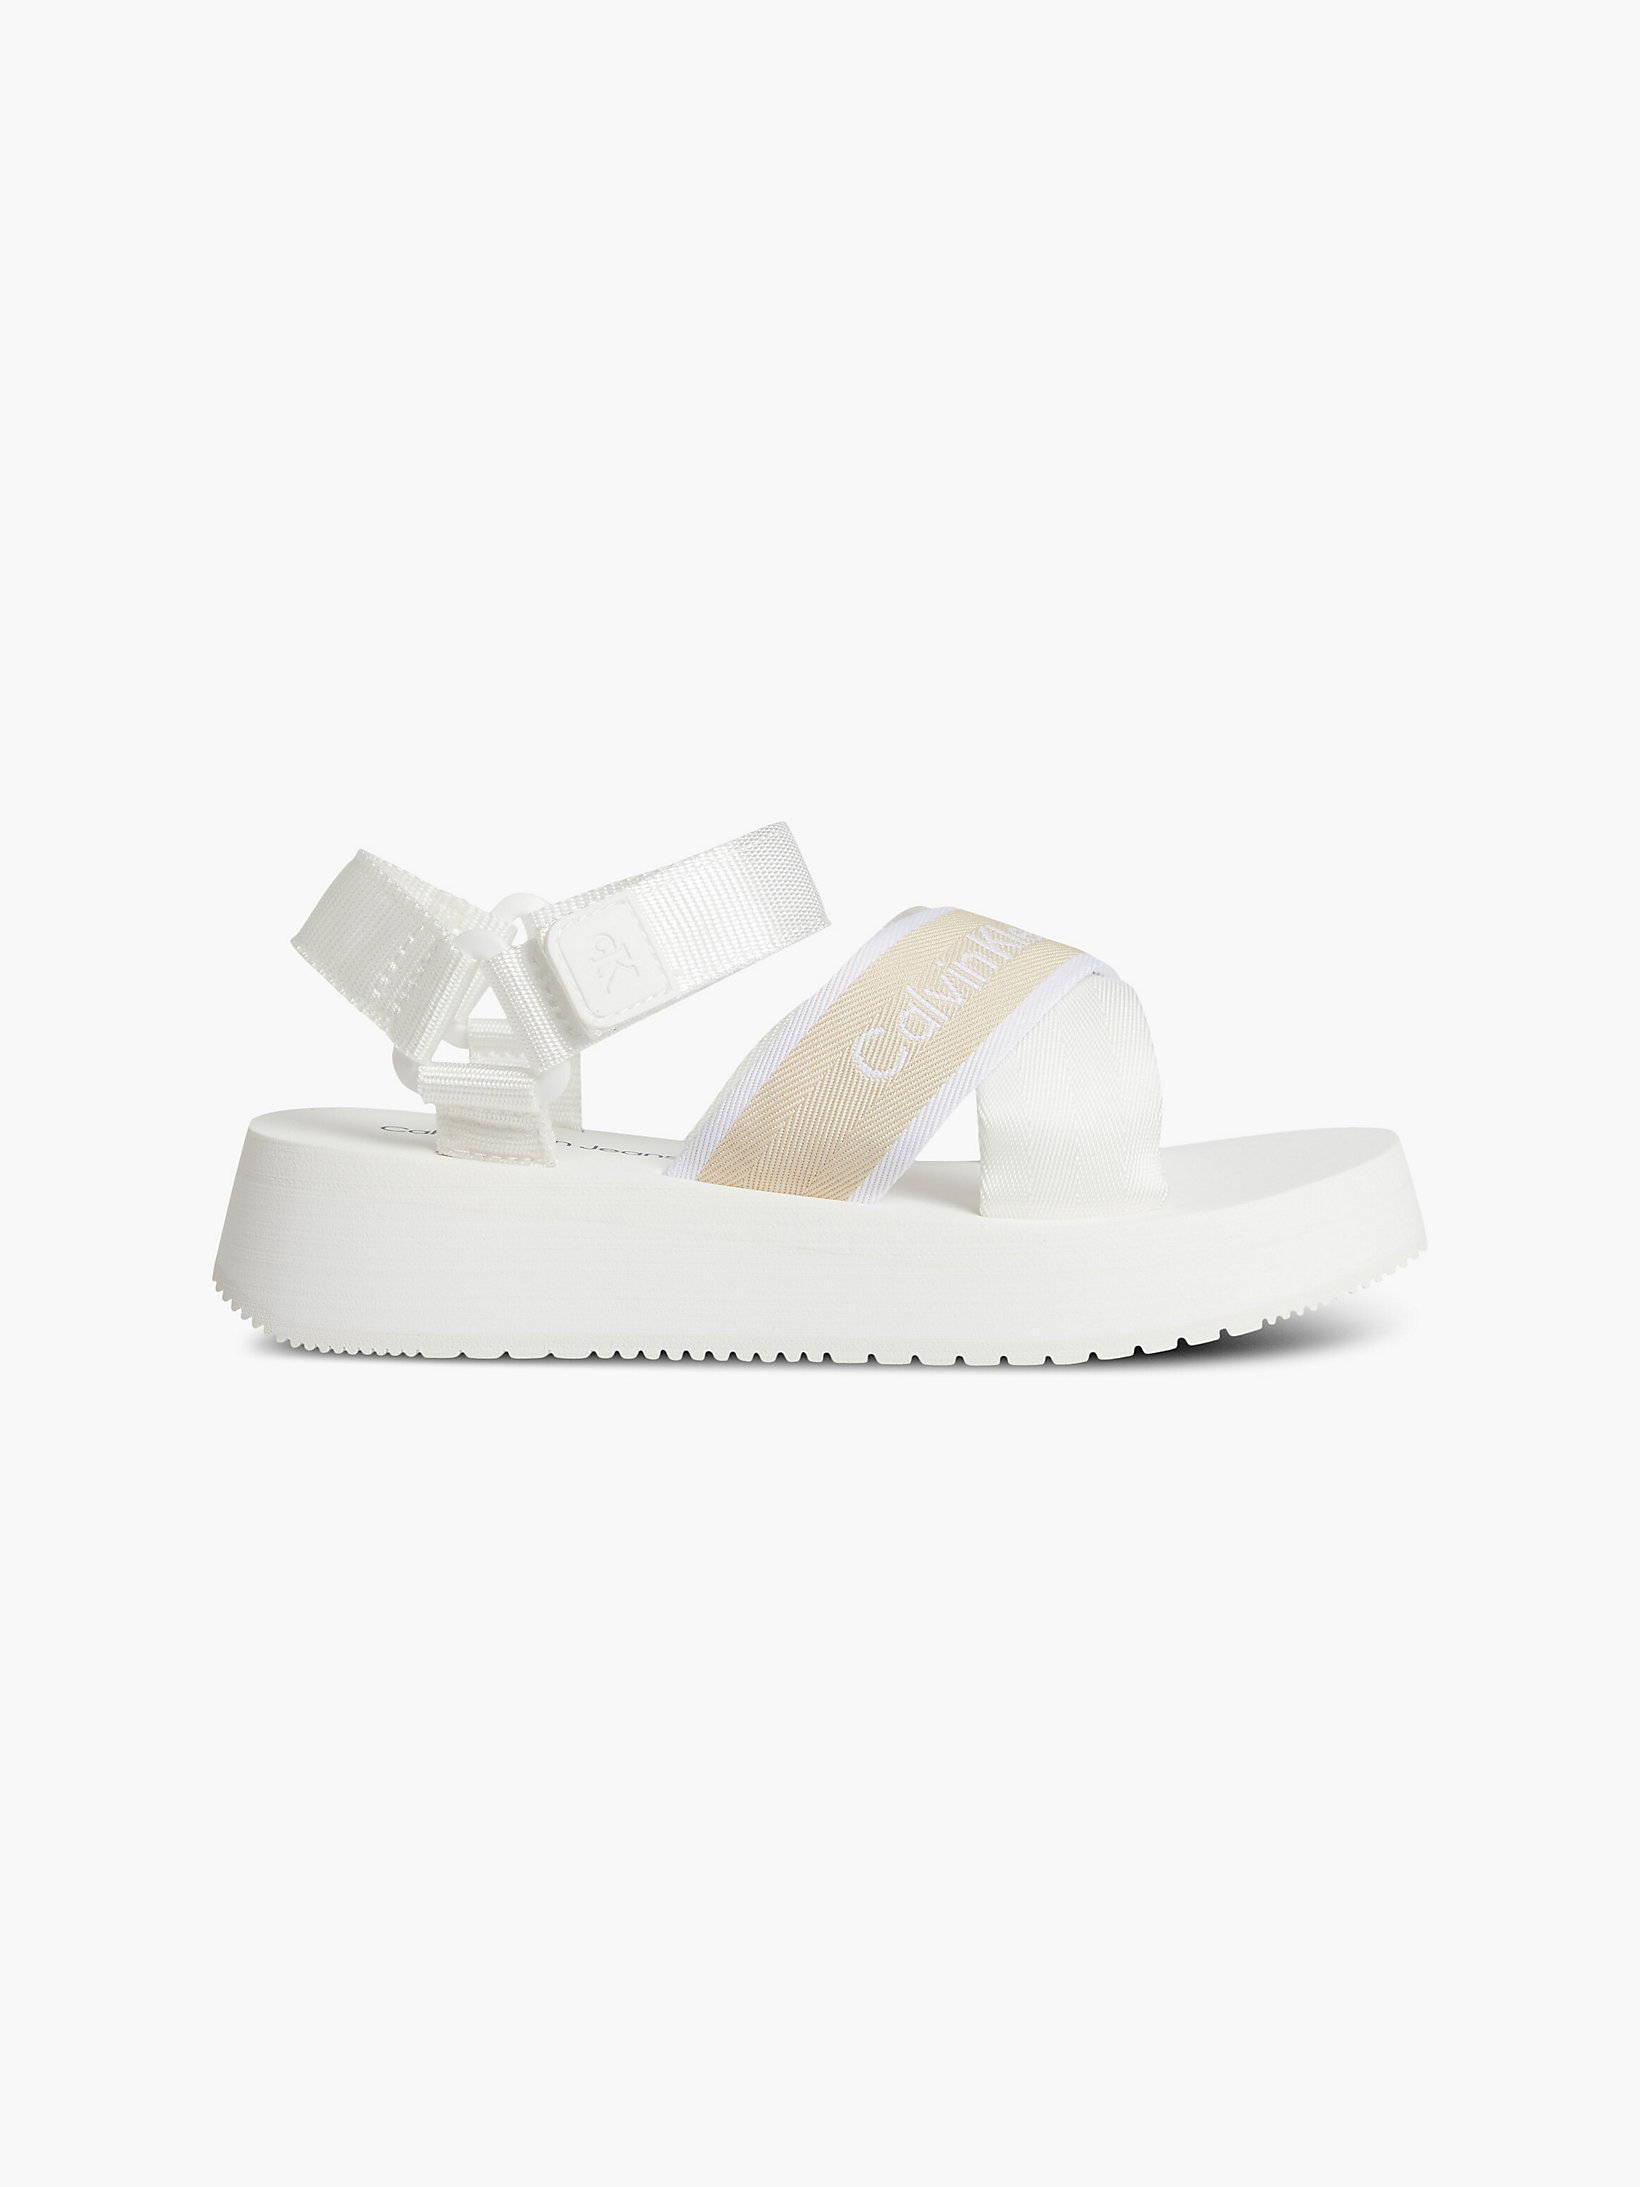 Bright White Recycled Platform Wedge Sandals undefined women Calvin Klein